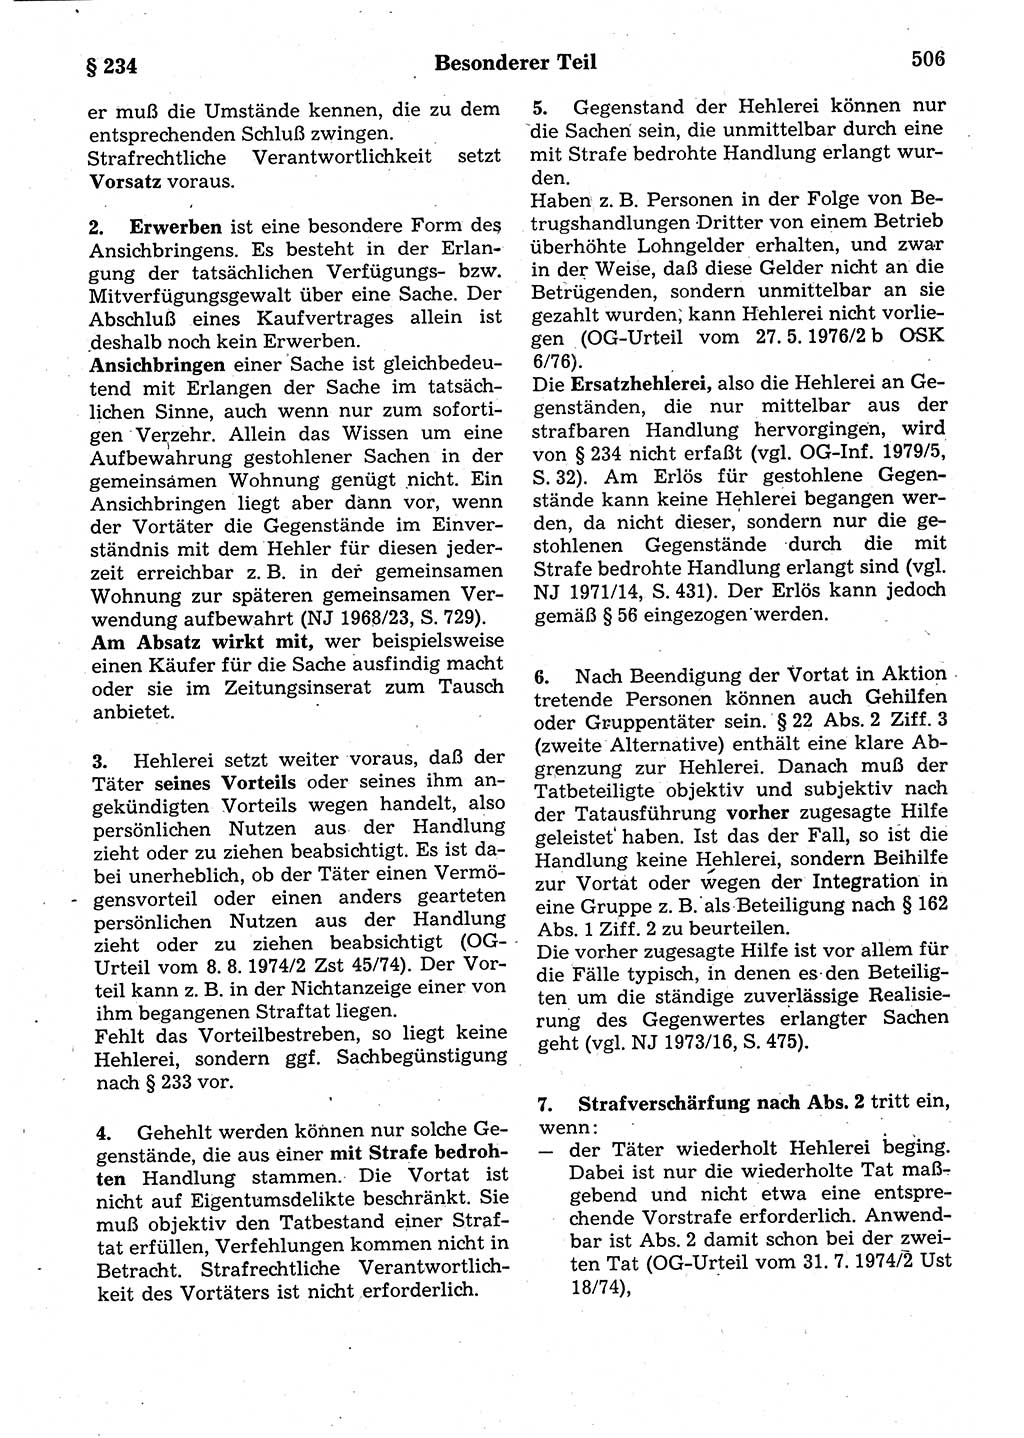 Strafrecht der Deutschen Demokratischen Republik (DDR), Kommentar zum Strafgesetzbuch (StGB) 1987, Seite 506 (Strafr. DDR Komm. StGB 1987, S. 506)